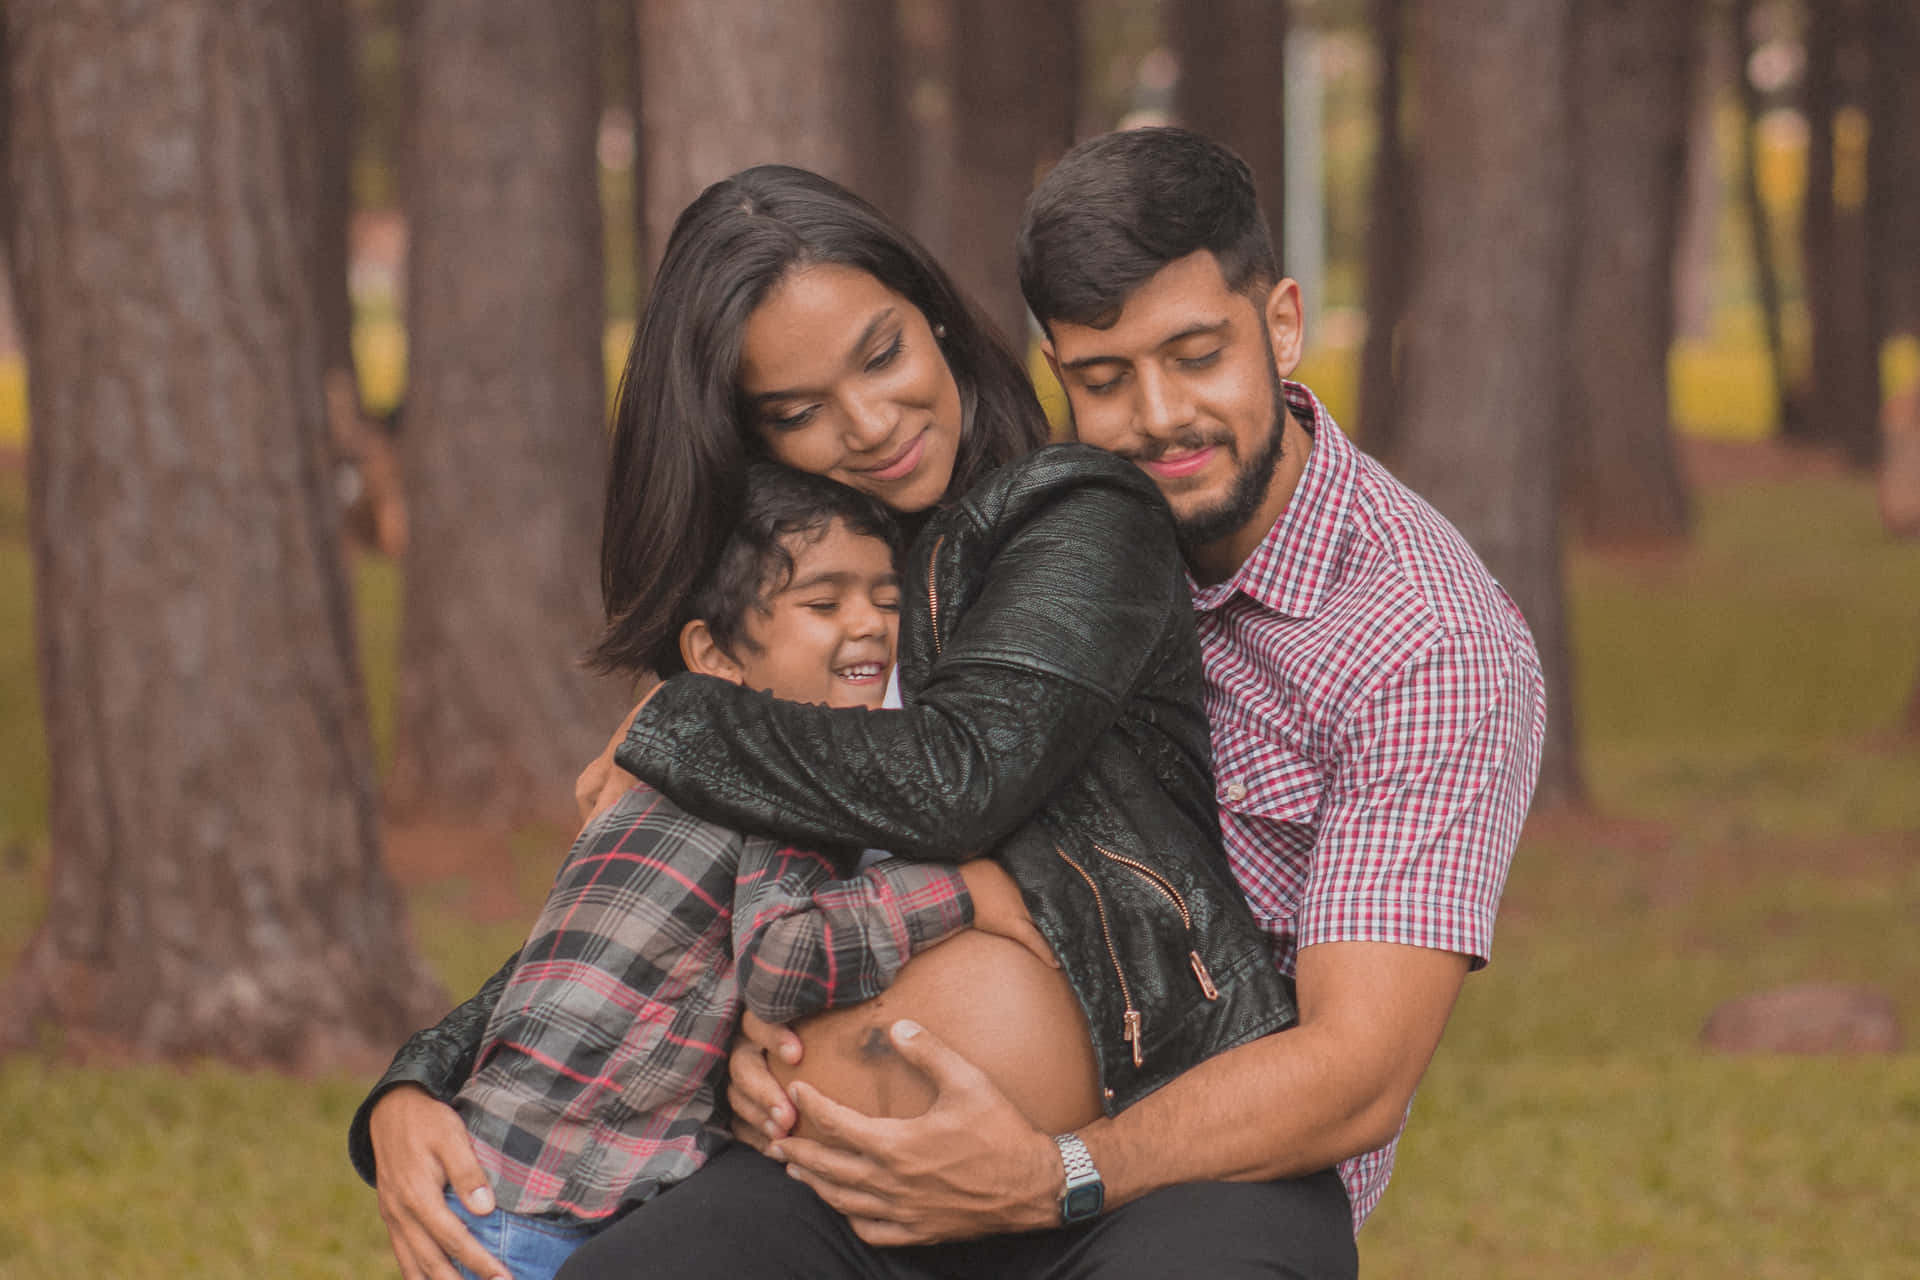 Dieserperfekte Moment – Ein Premium-familienporträt